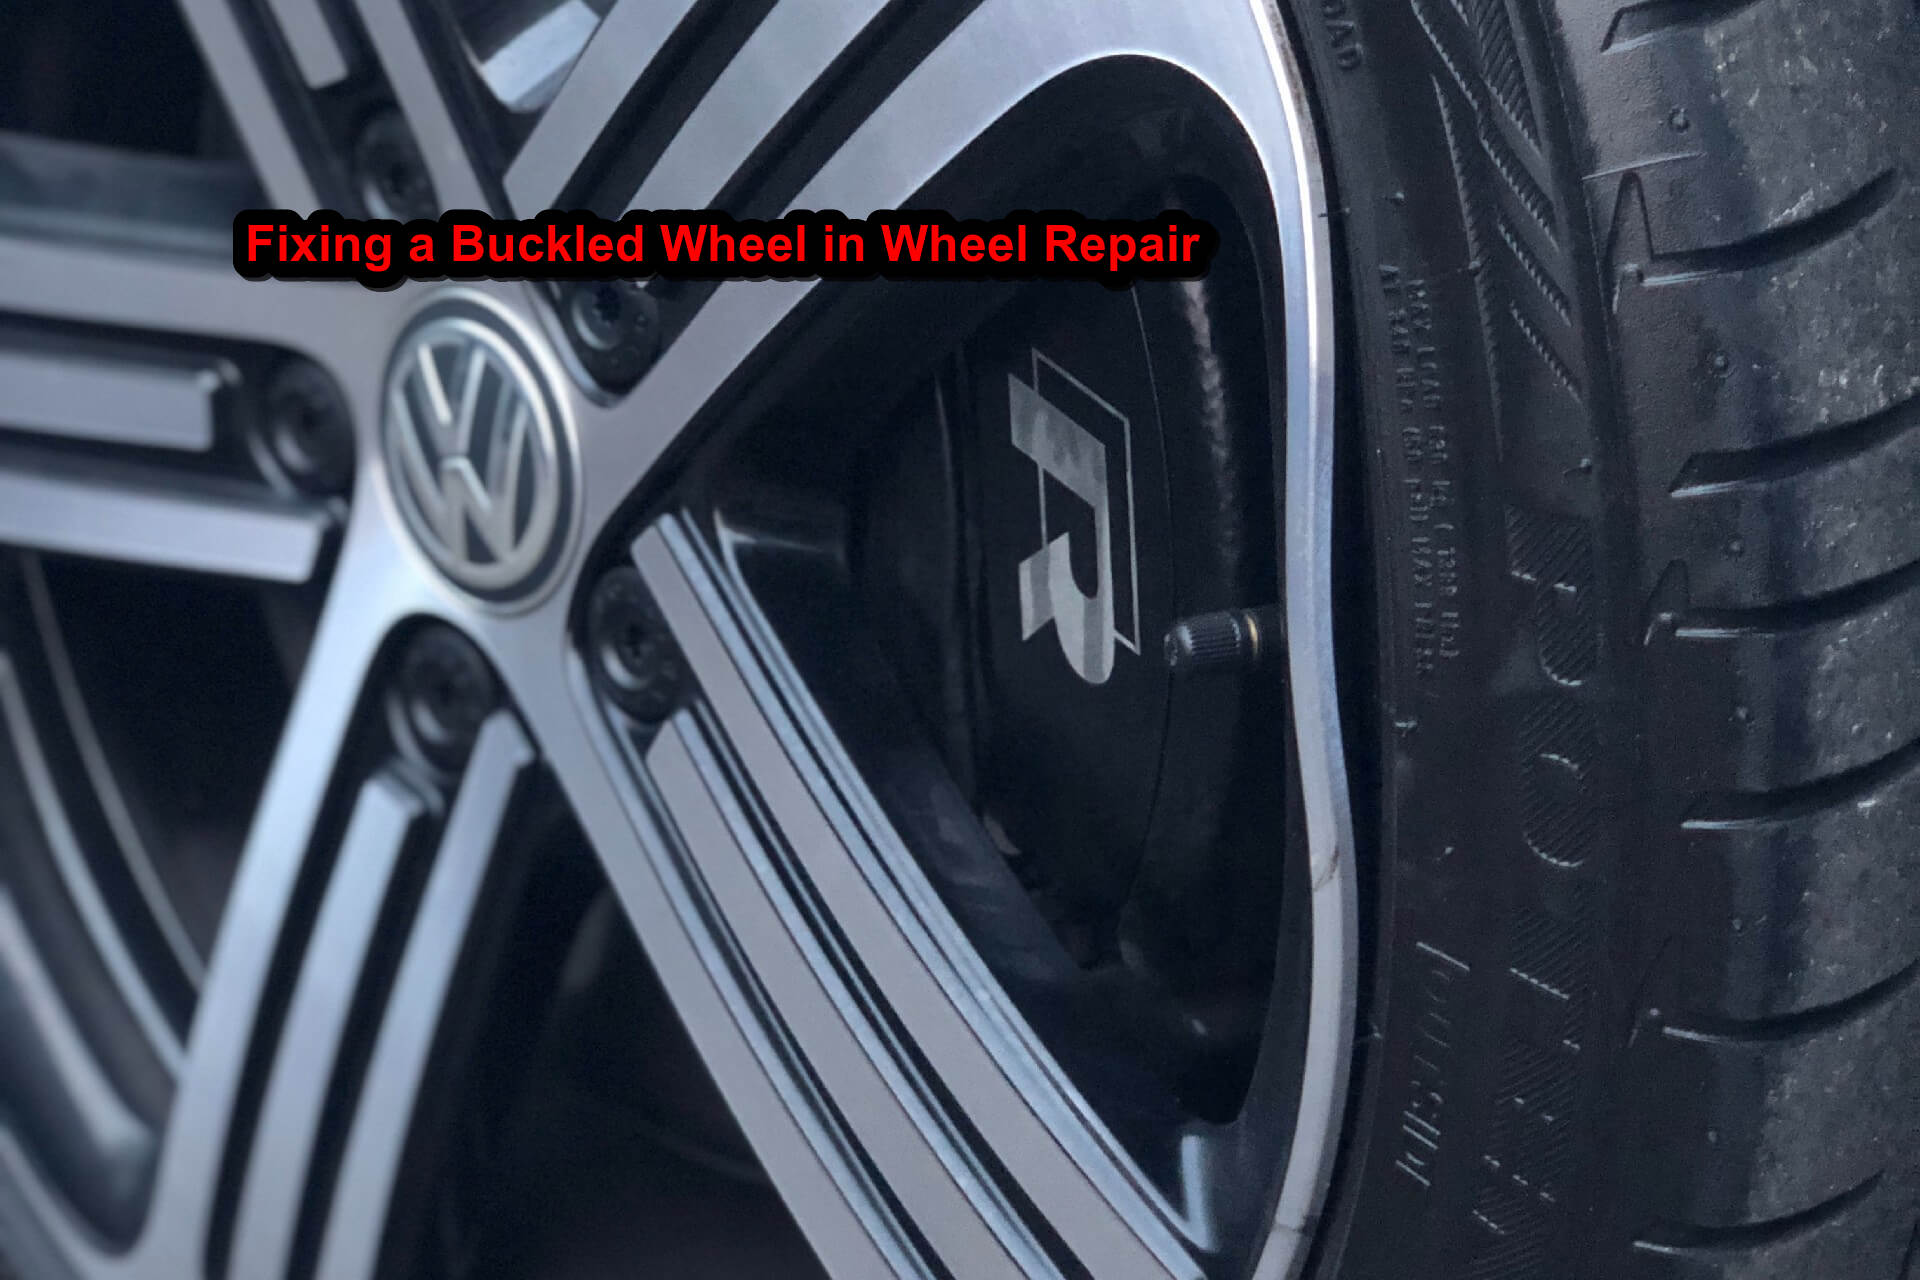 Fixing a Buckled Wheel in Wheel Repair